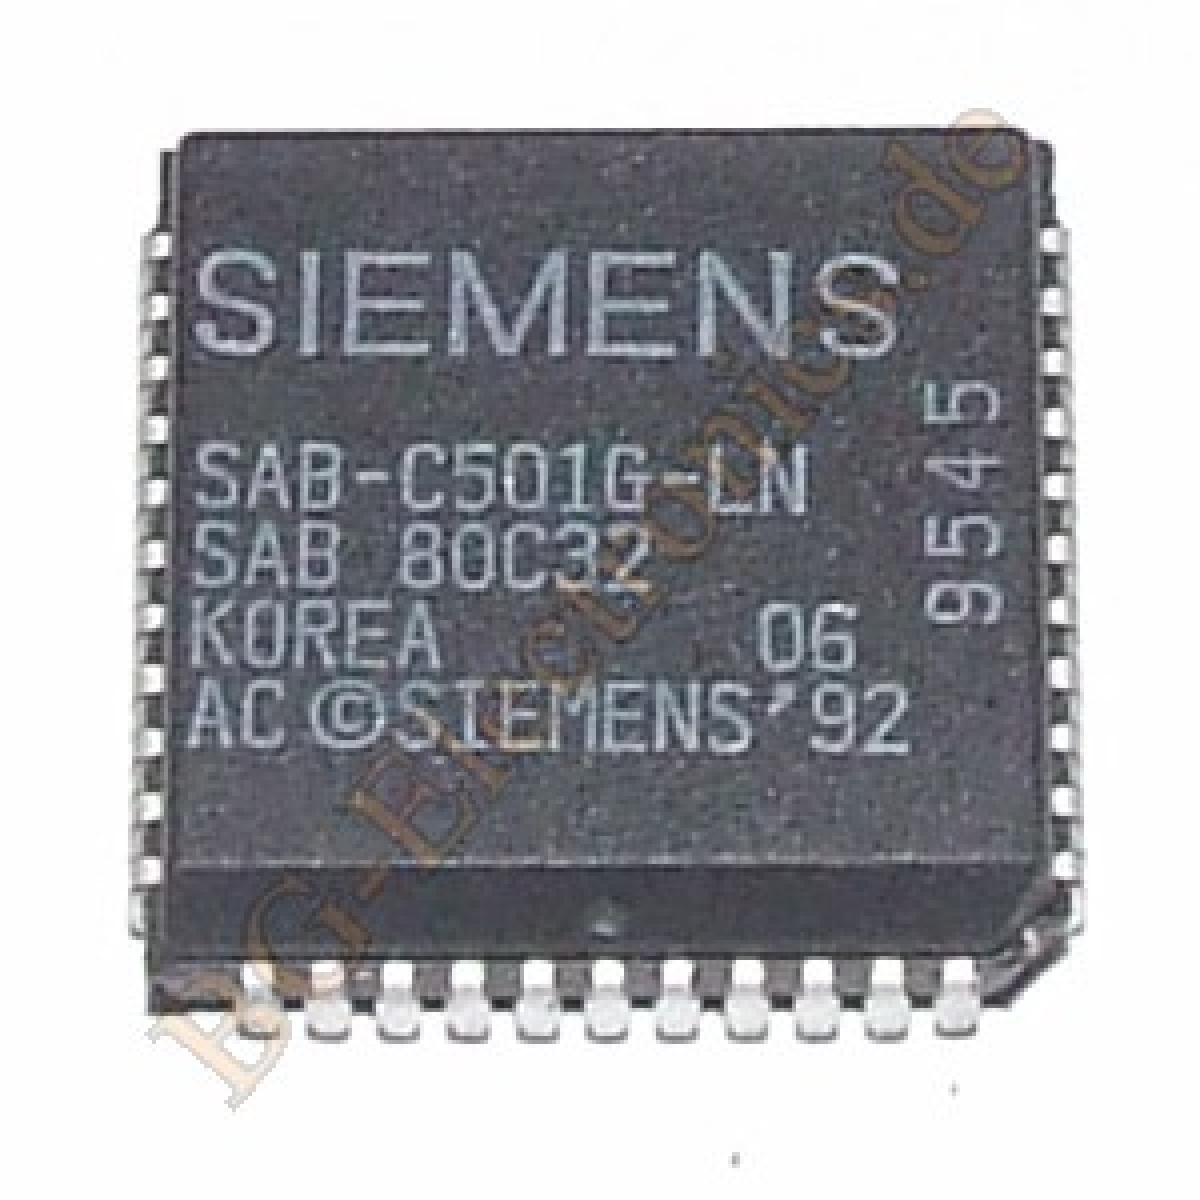 SAB-C501G-LN